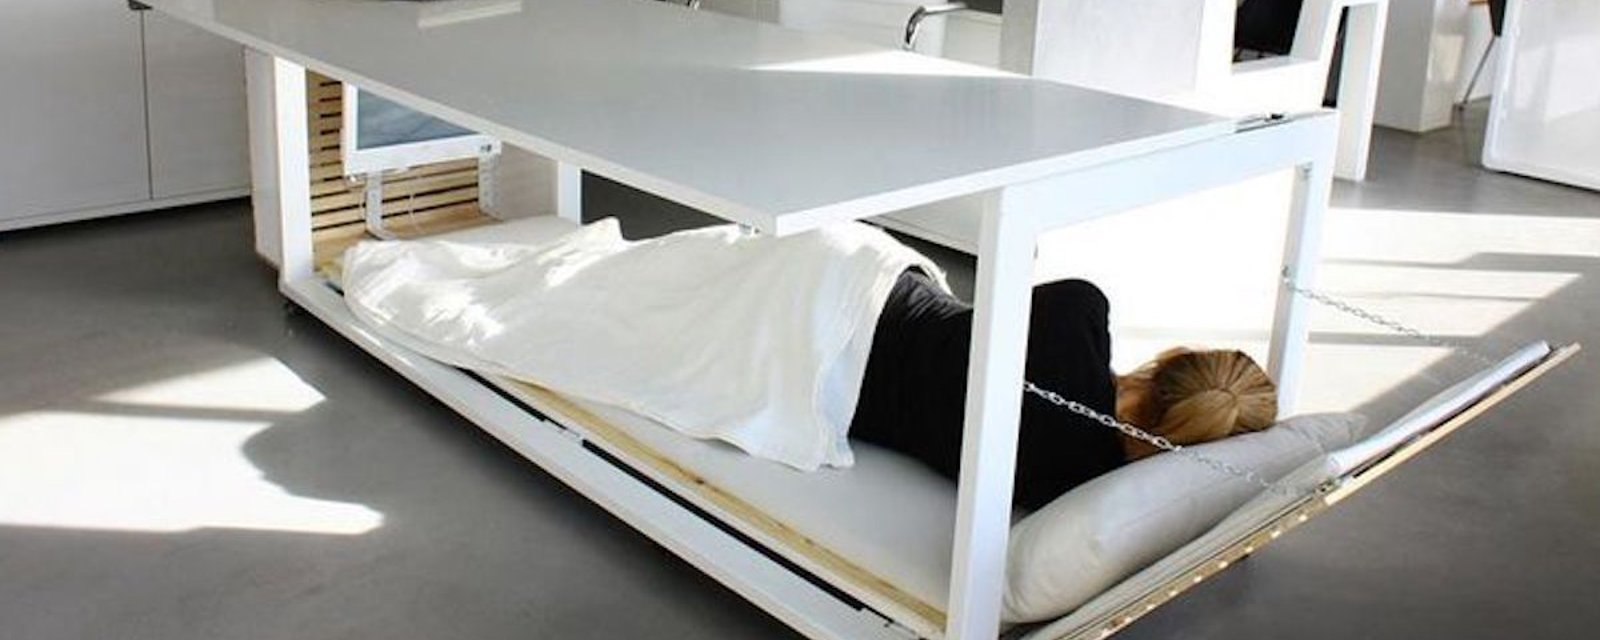 Une designer a inventé le bureau pour sieste